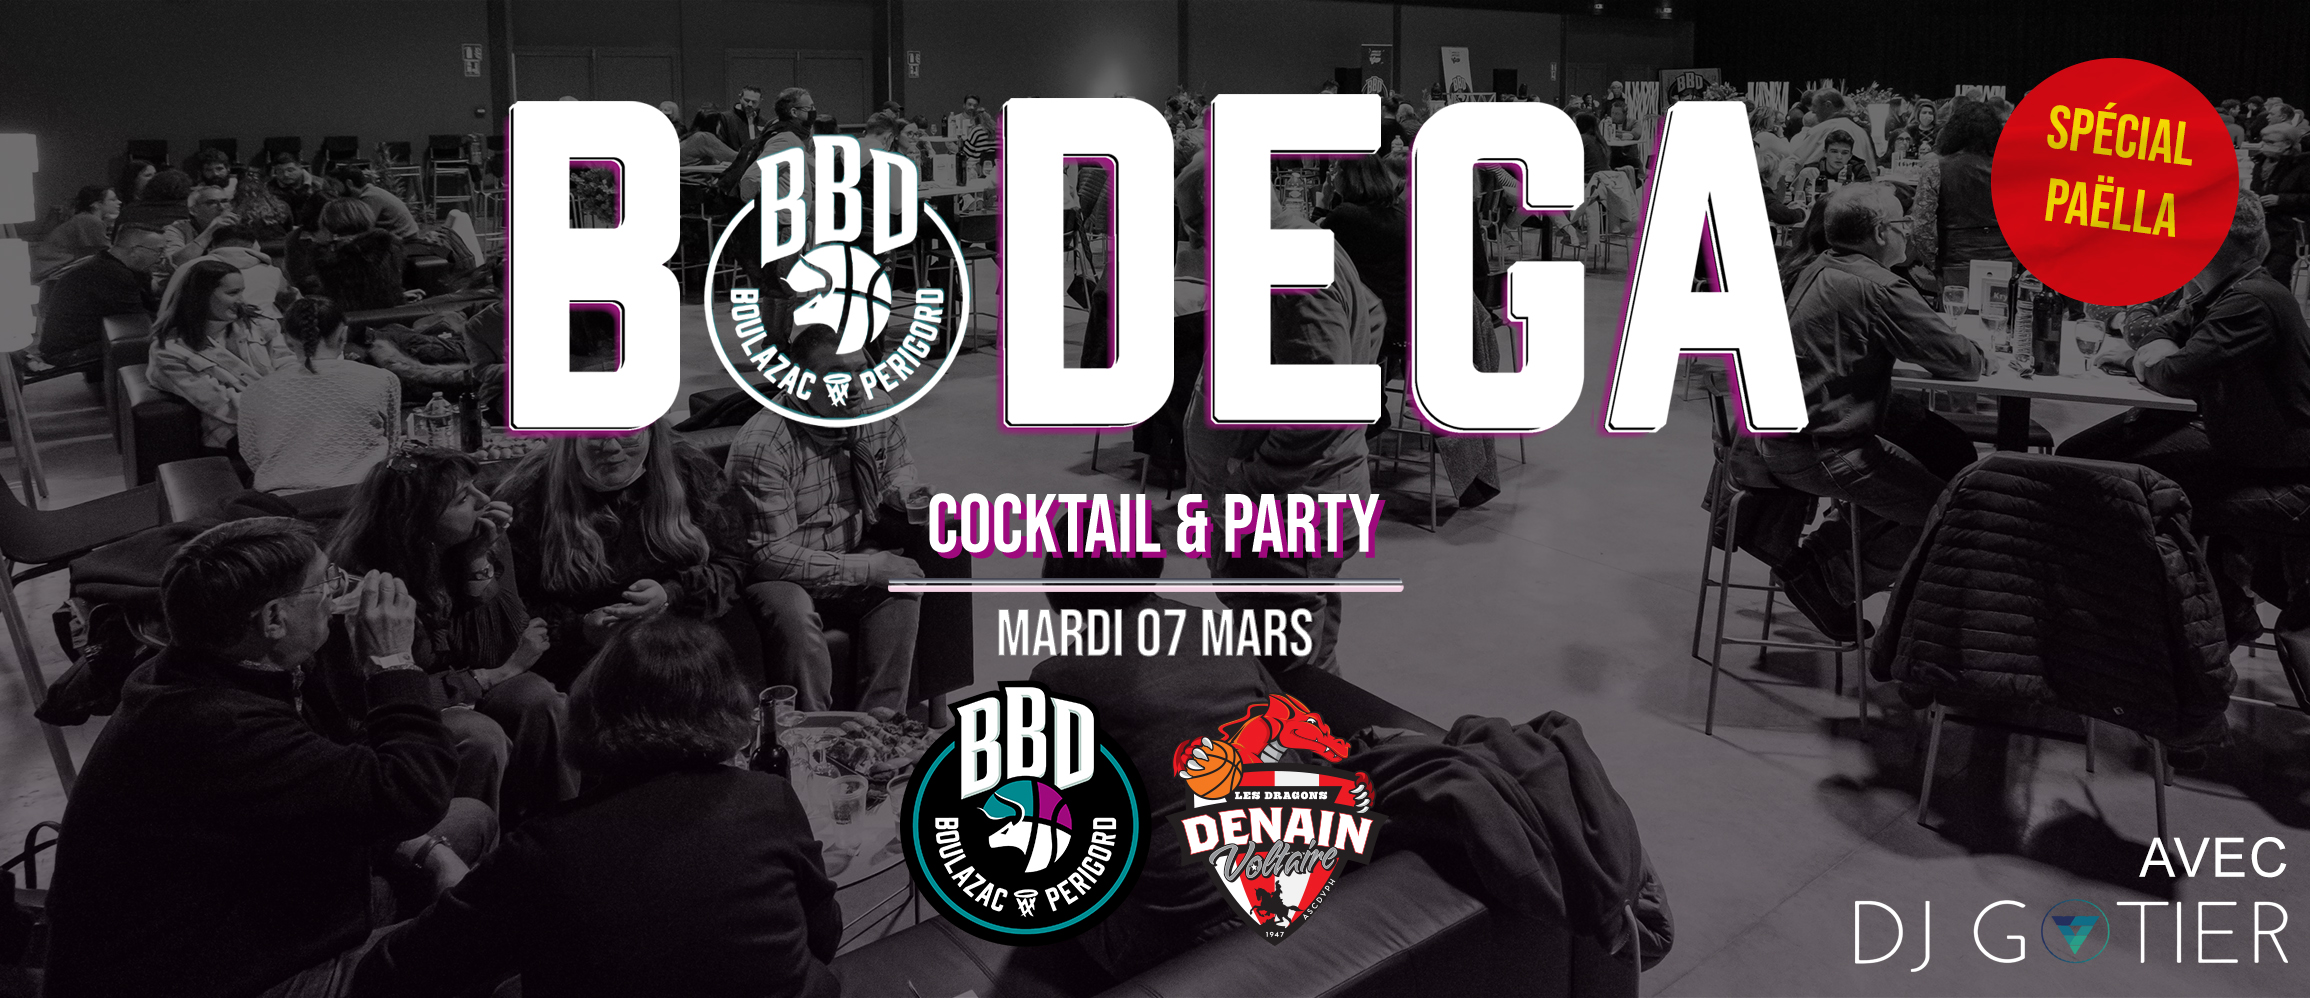 Prolongez votre soirée BBD avec la Bodega d’après match du mardi 07/03 !